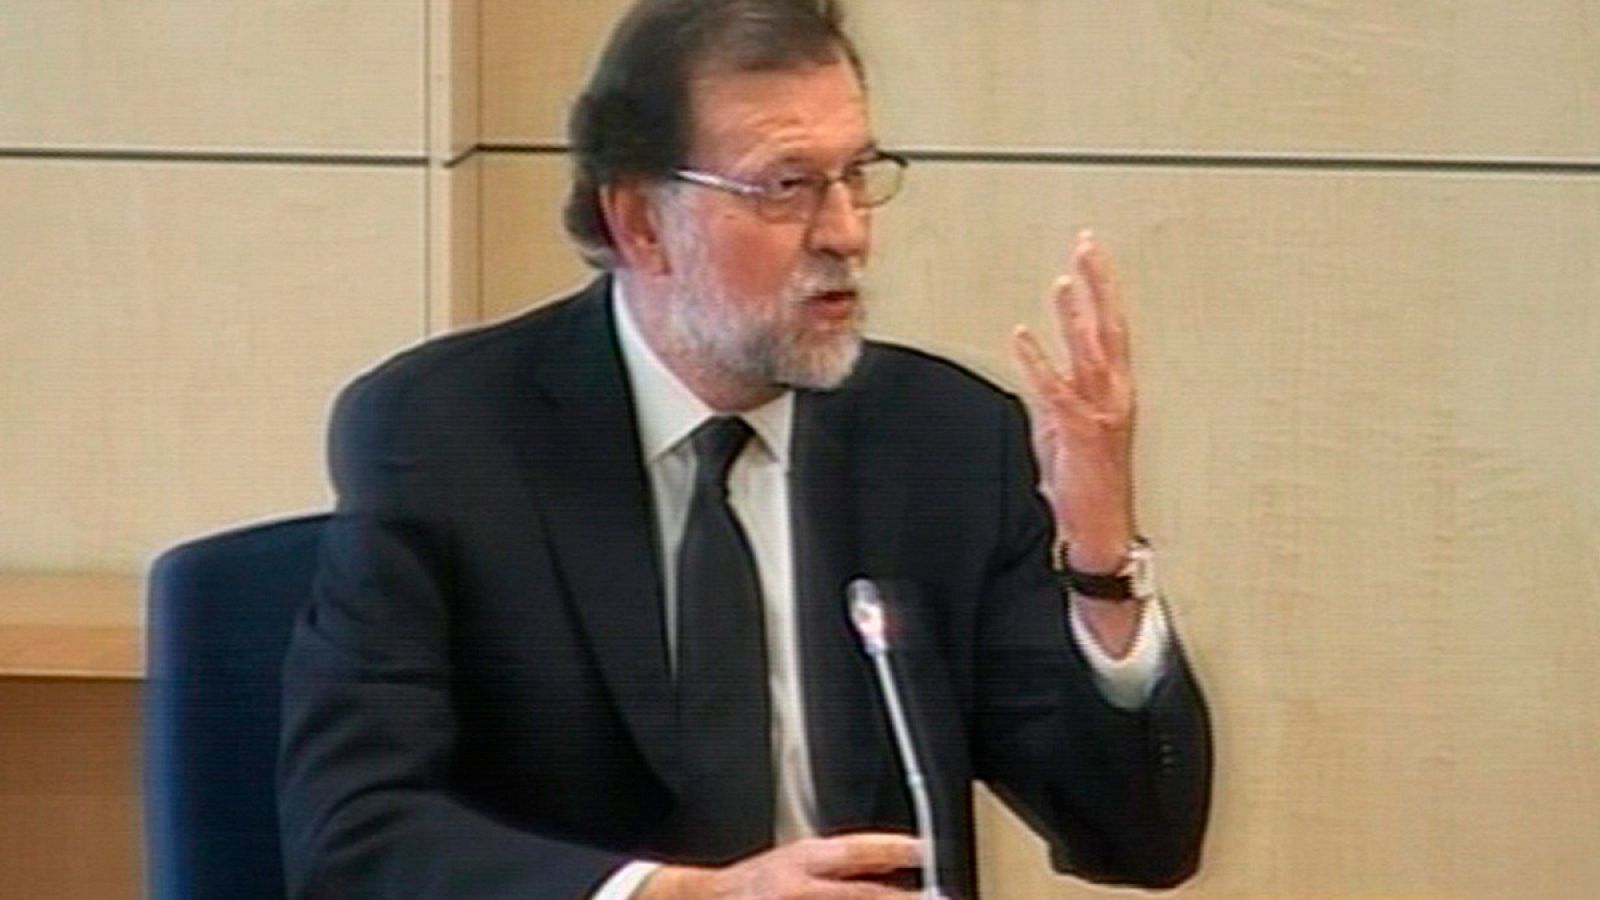 El presidente del Gobierno, Mariano Rajoy, durante su declaración como testigo en el juicio del caso Gürtel, el 26 de julio de 2017